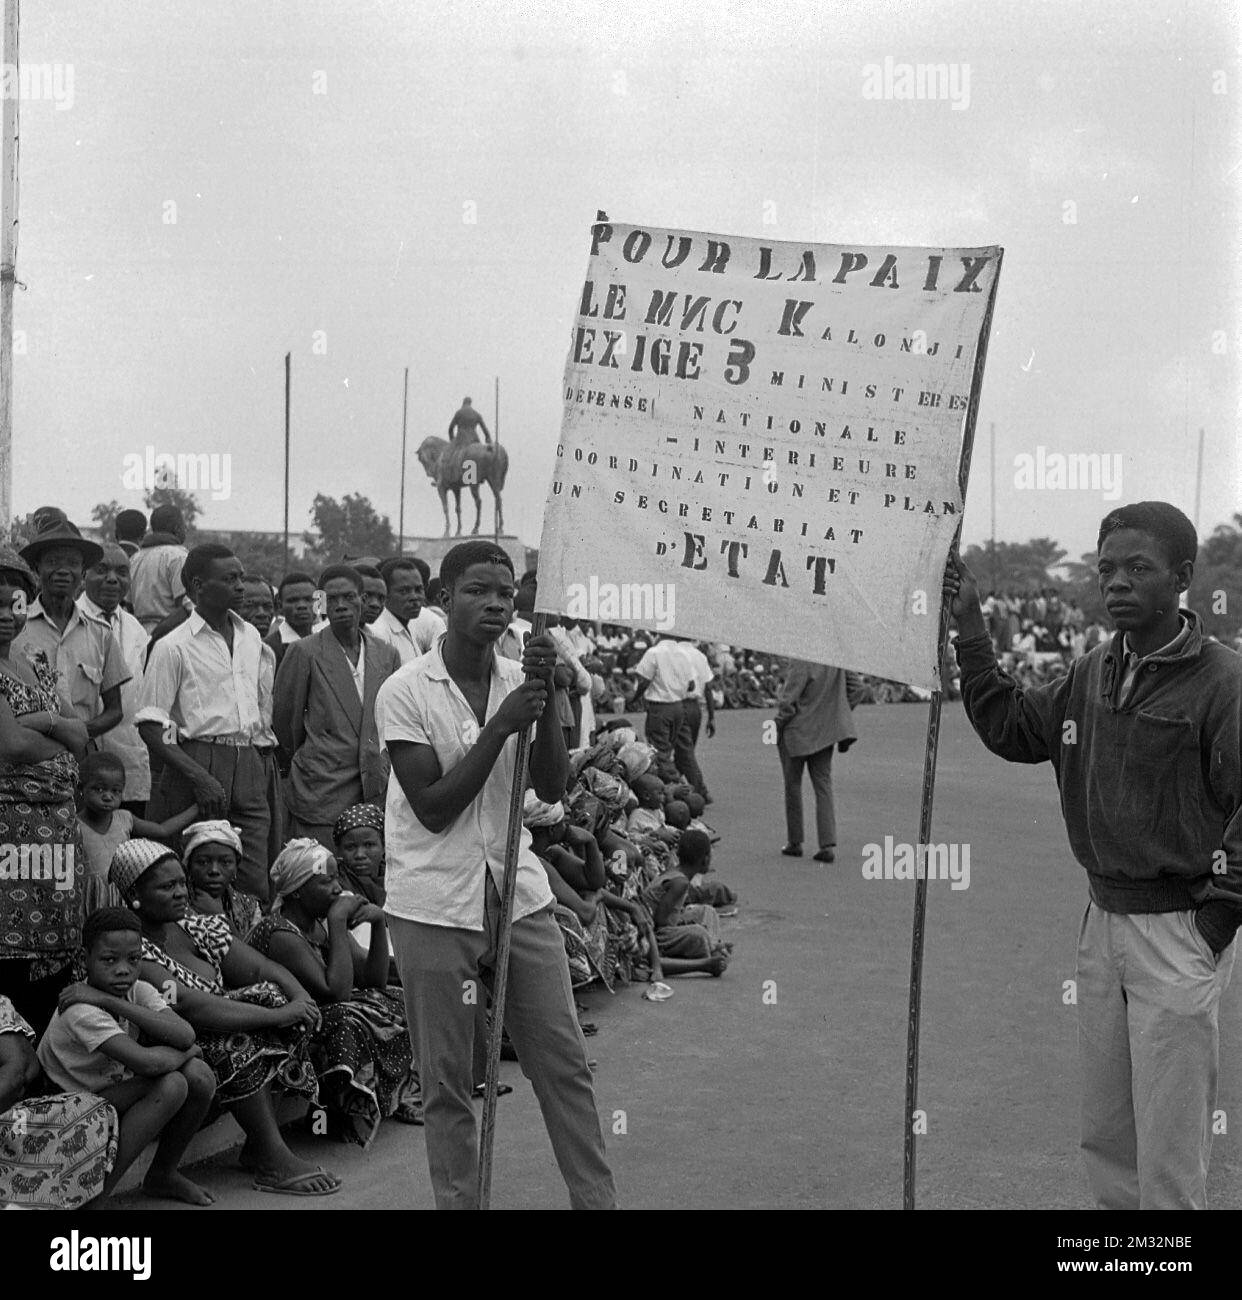 19600628 - LEOPOLDVILLE, CONGO: Deux hommes congolais tiennent une bannière lors d'une manifestation prétendant être pour la paix et soutenir Kolandi à l'extérieur du Palais de la Nation le 28 juin 1960 à Leopoldville, Congo. (Archives Belga) Banque D'Images